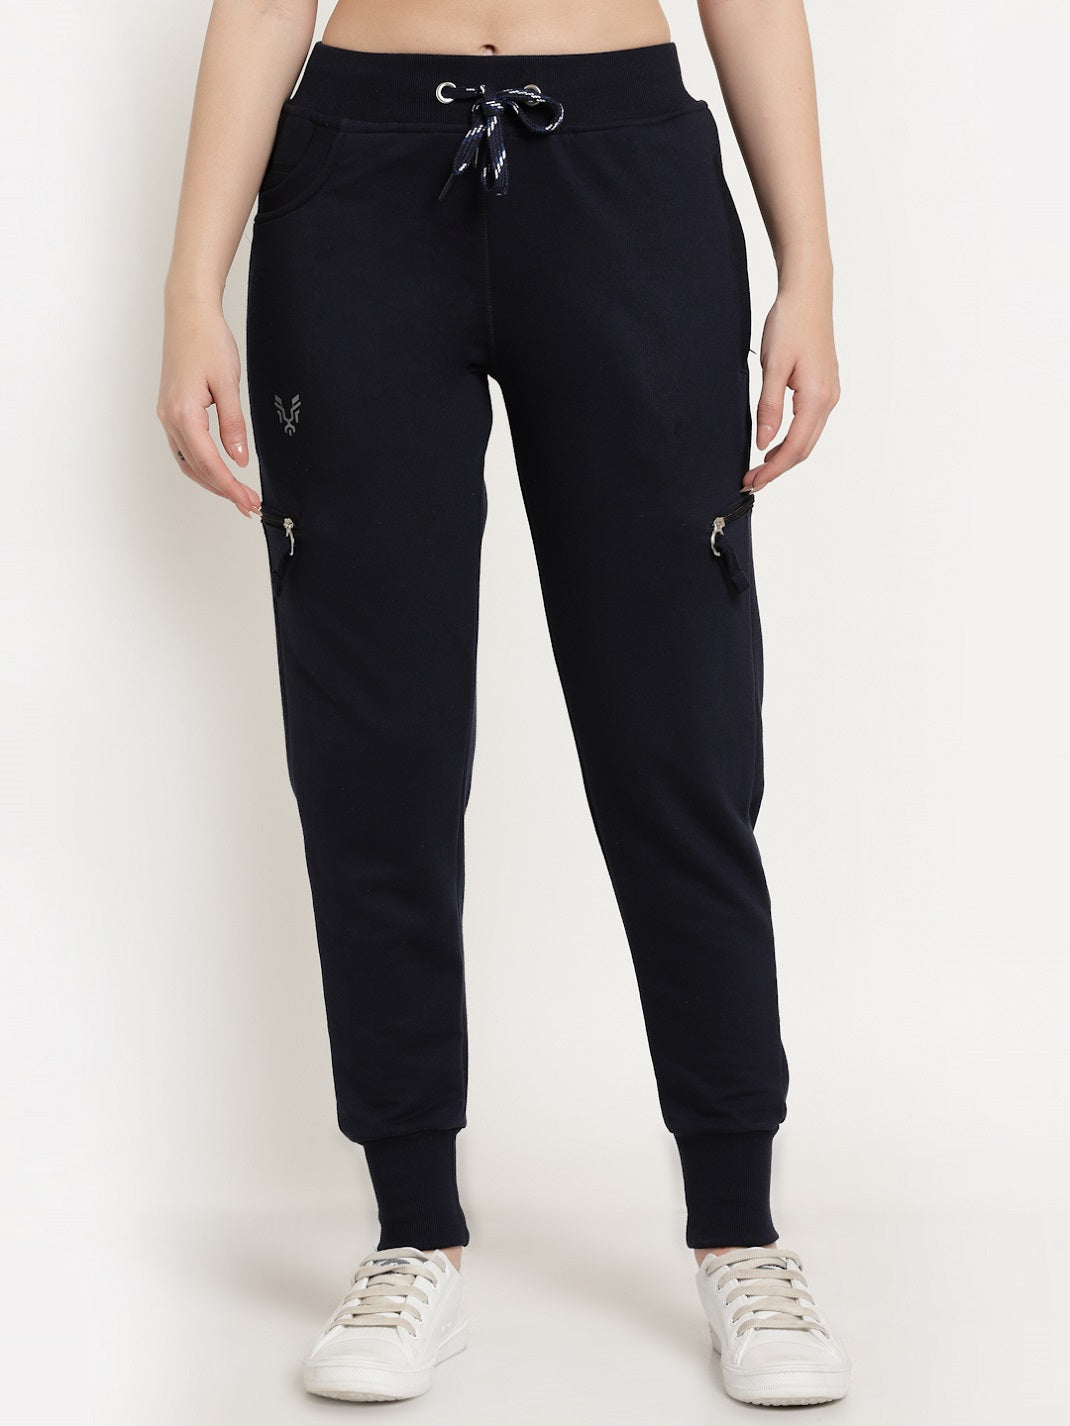 Buy Women Jogger Pants with Pockets Drawstring Elastic High Waist Loose  Yoga Pants Joggers Huaishu at Amazon.in